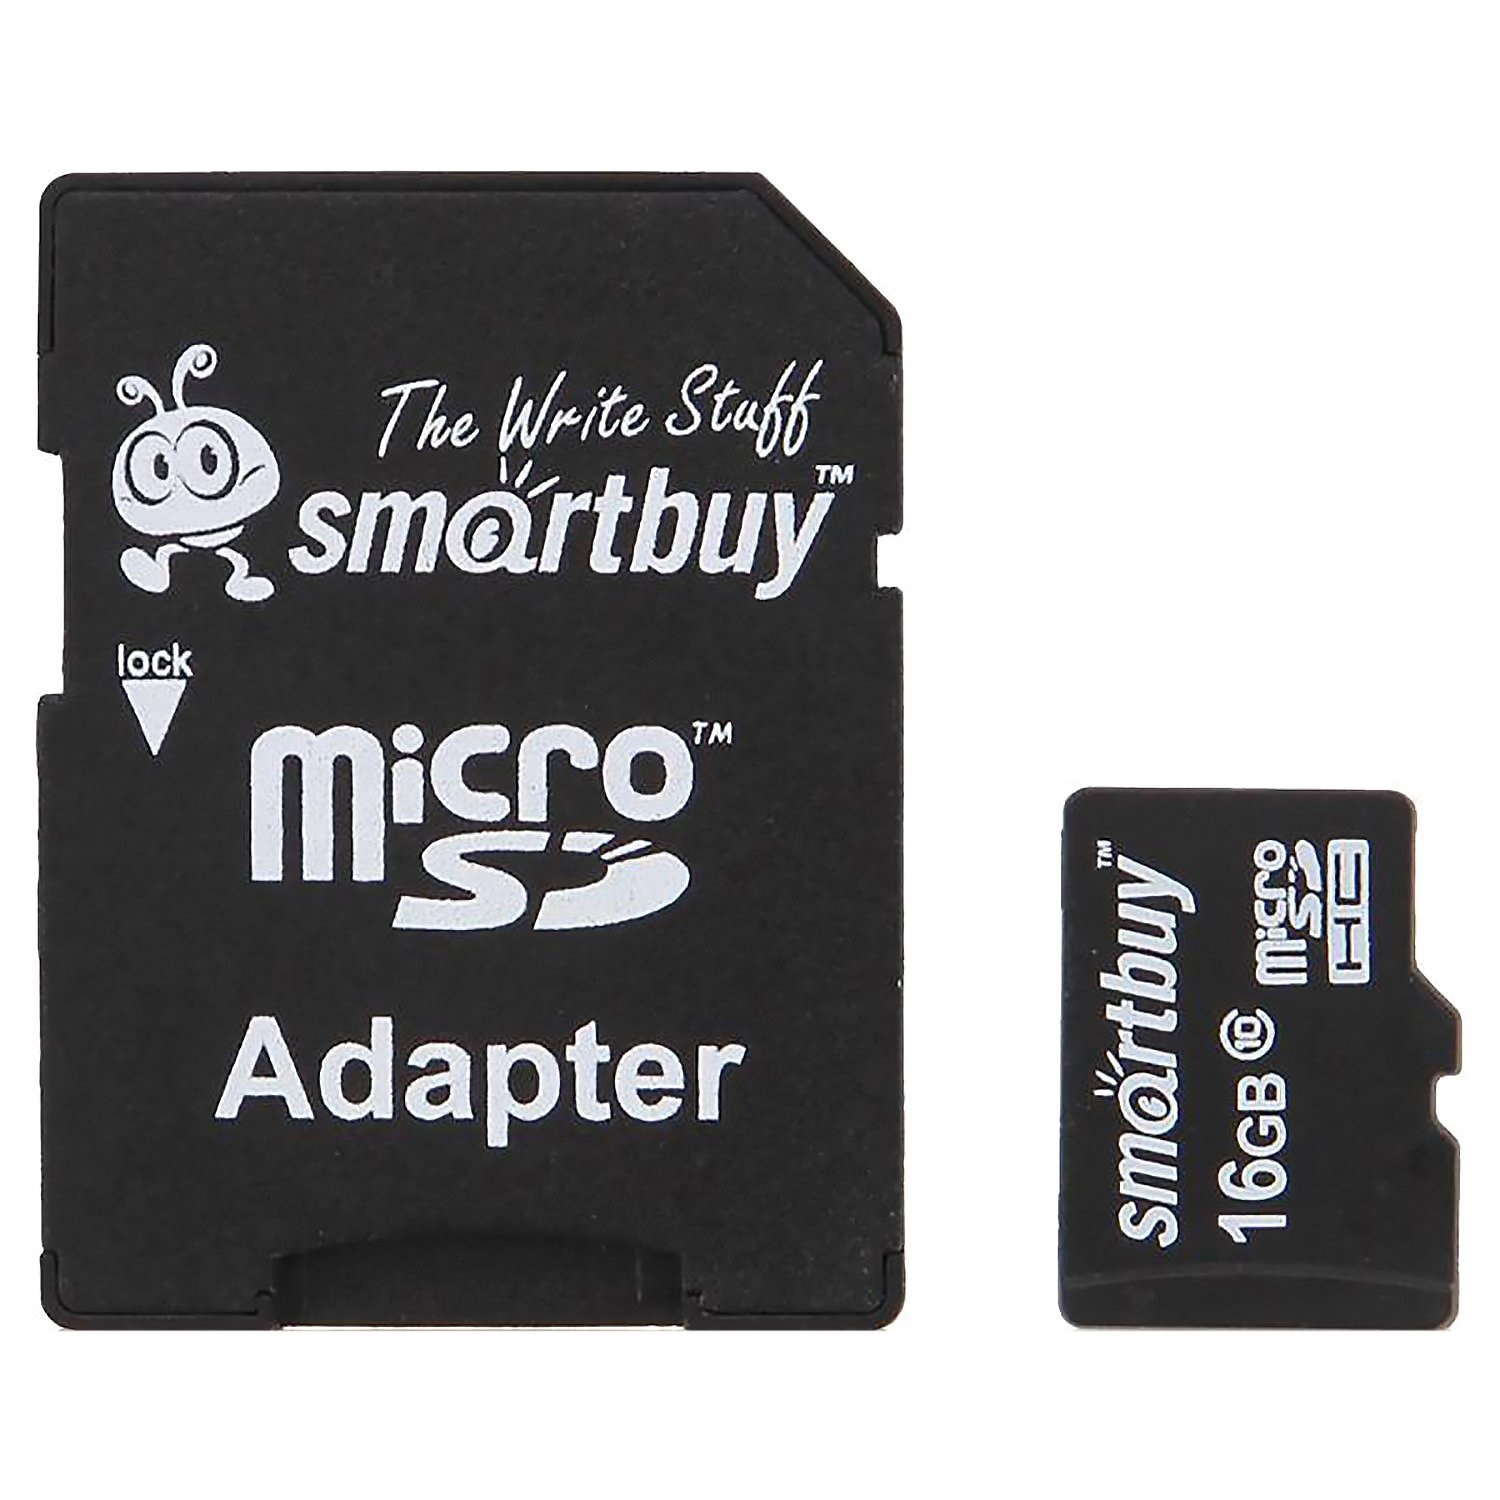 Память микро сд купить. Карта флэш-памяти MICROSD 32 ГБ Smart buy +SD адаптер (class 10) Compact. Карта памяти SMARTBUY MICROSDHC class 10 8gb. Карта памяти SMARTBUY MICROSDHC class 10 64gb. Карта памяти SMARTBUY MICROSD 128gb 10 class.